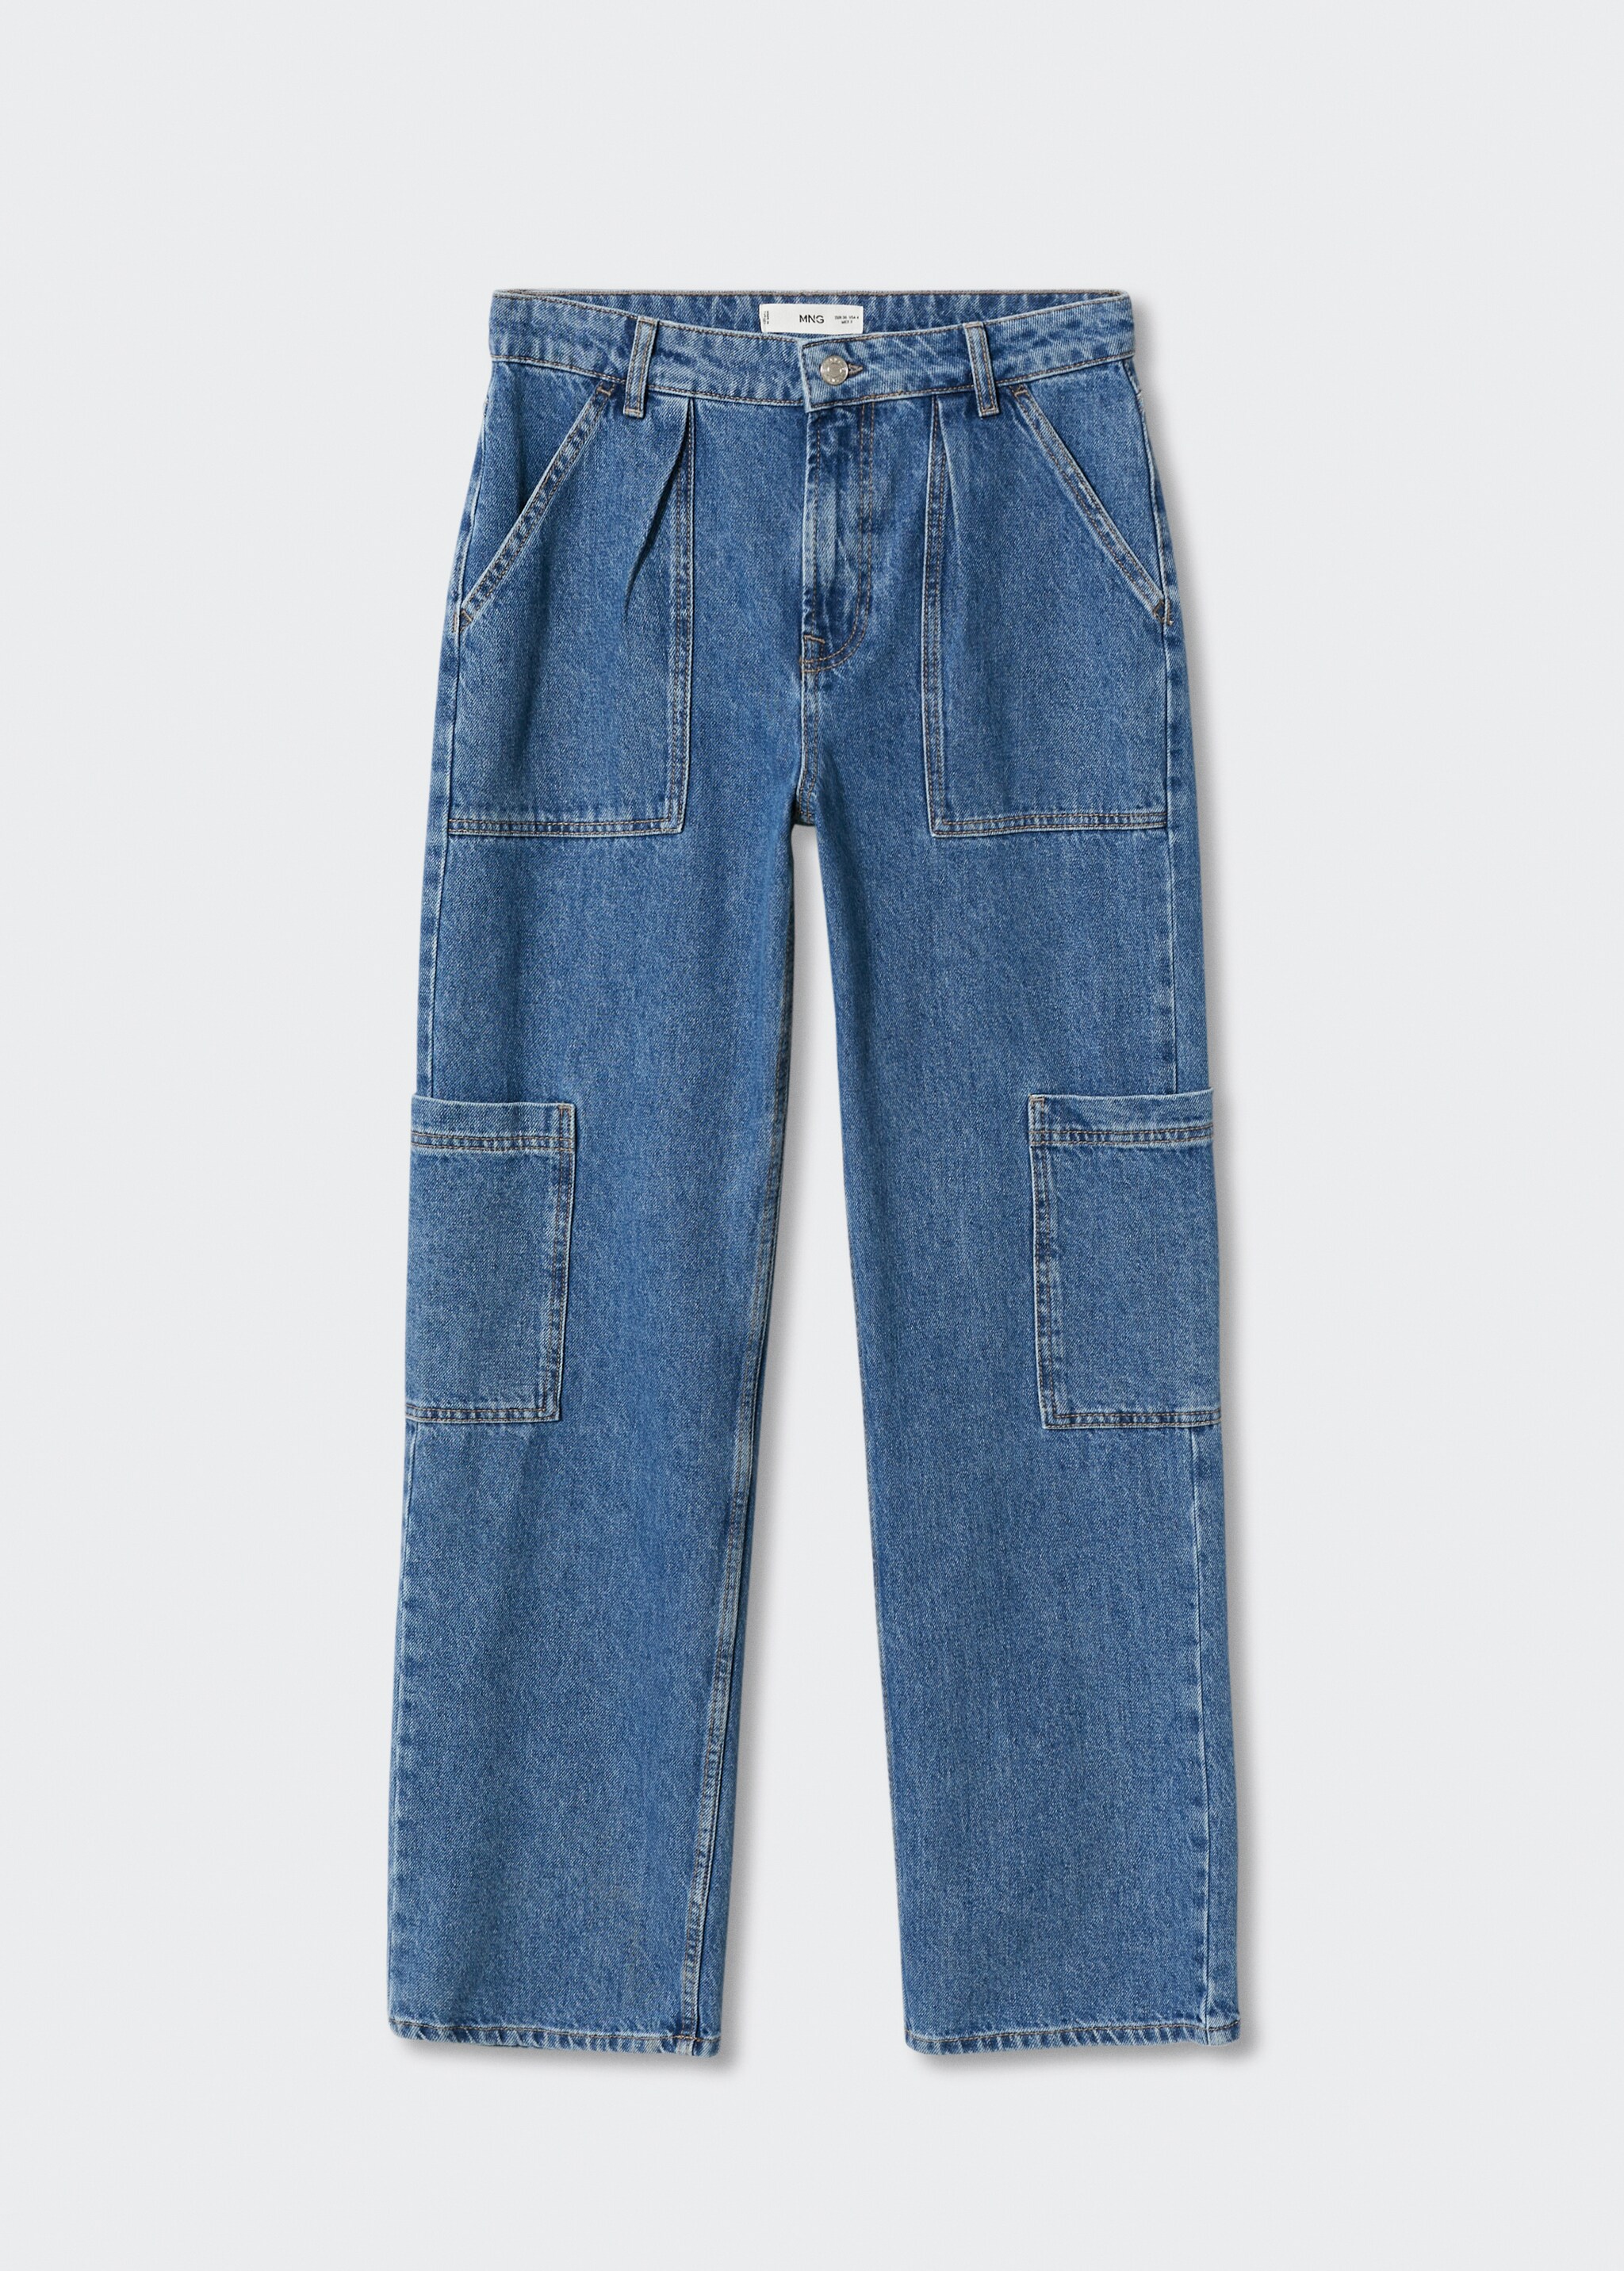 Jeans cargo pinzas - Artículo sin modelo